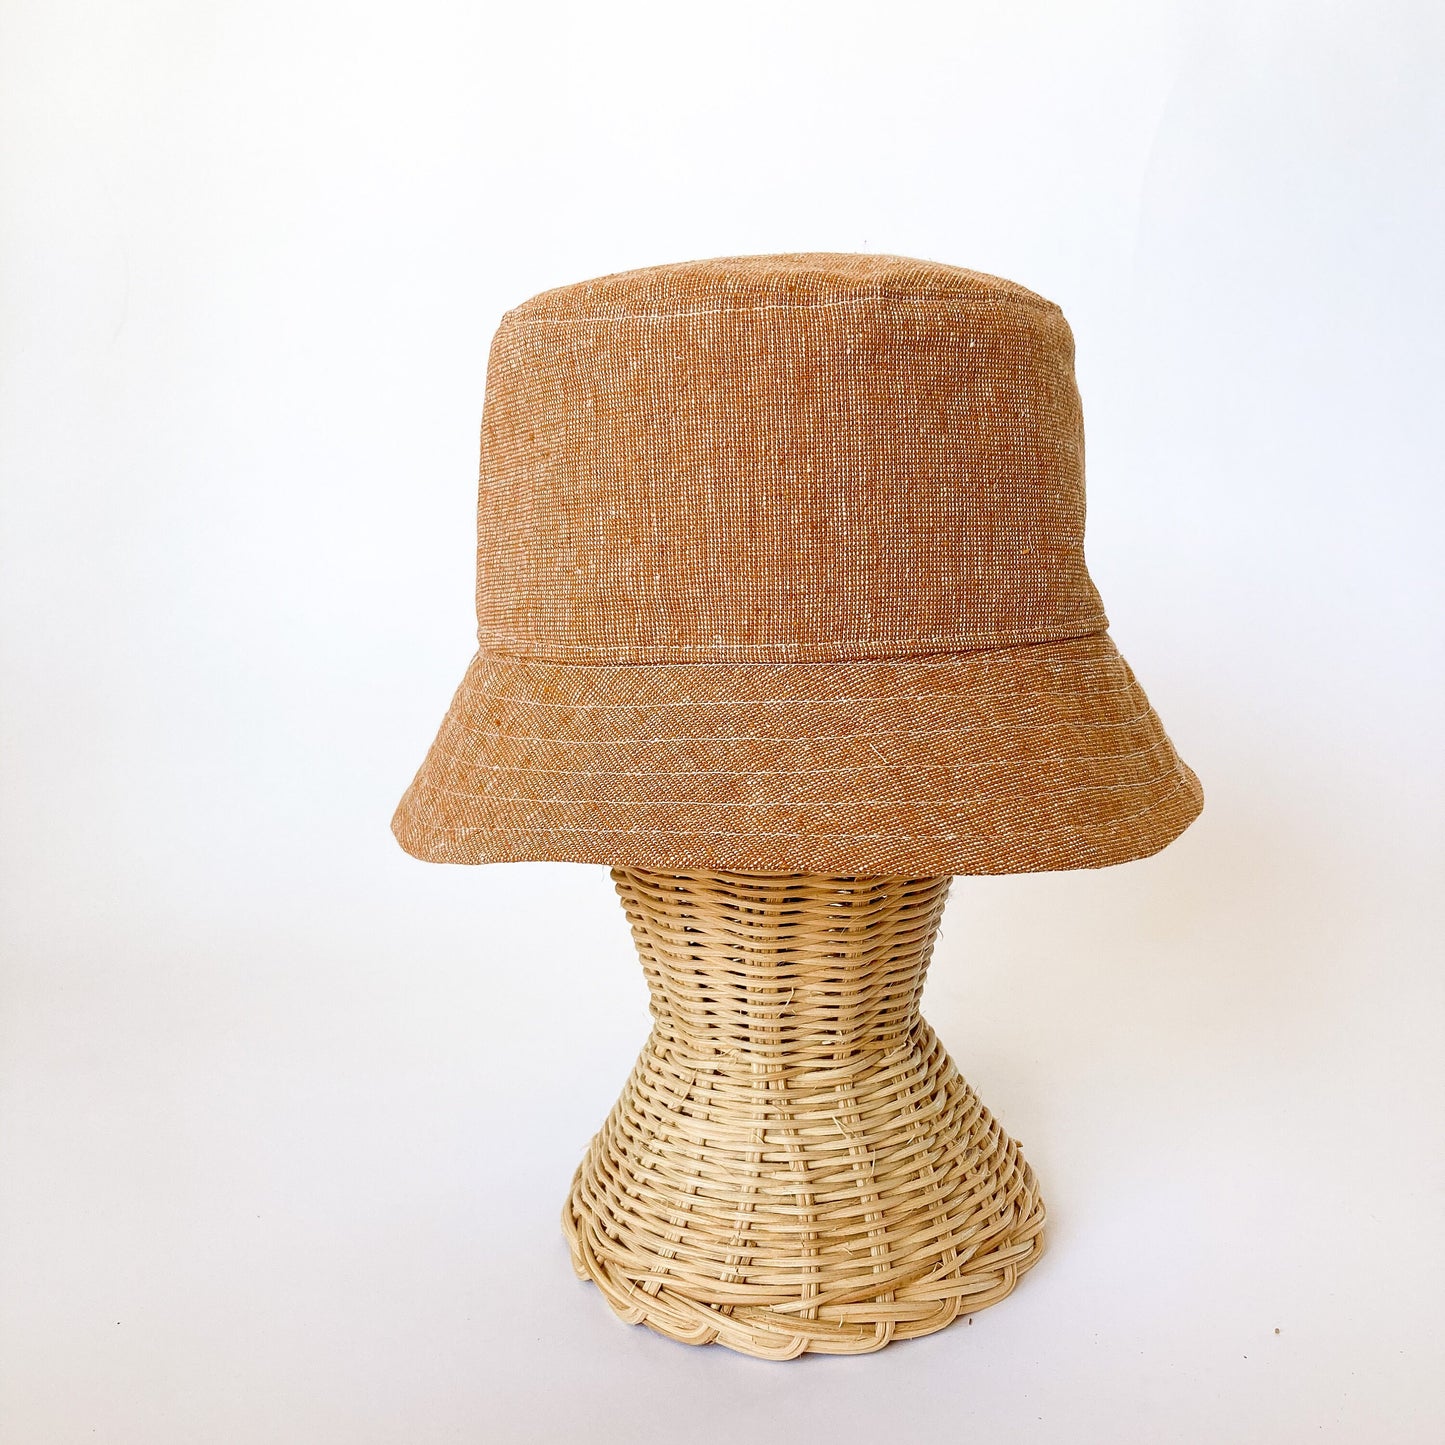 Brown Linen Hat, Beach Hat, Sun Hat Womens, Linen Bucket Hat, Bucket Sun Hat, Boho Beach Hat, Summer Linen Hat, Brown Bucket Hat, Fabric Hat